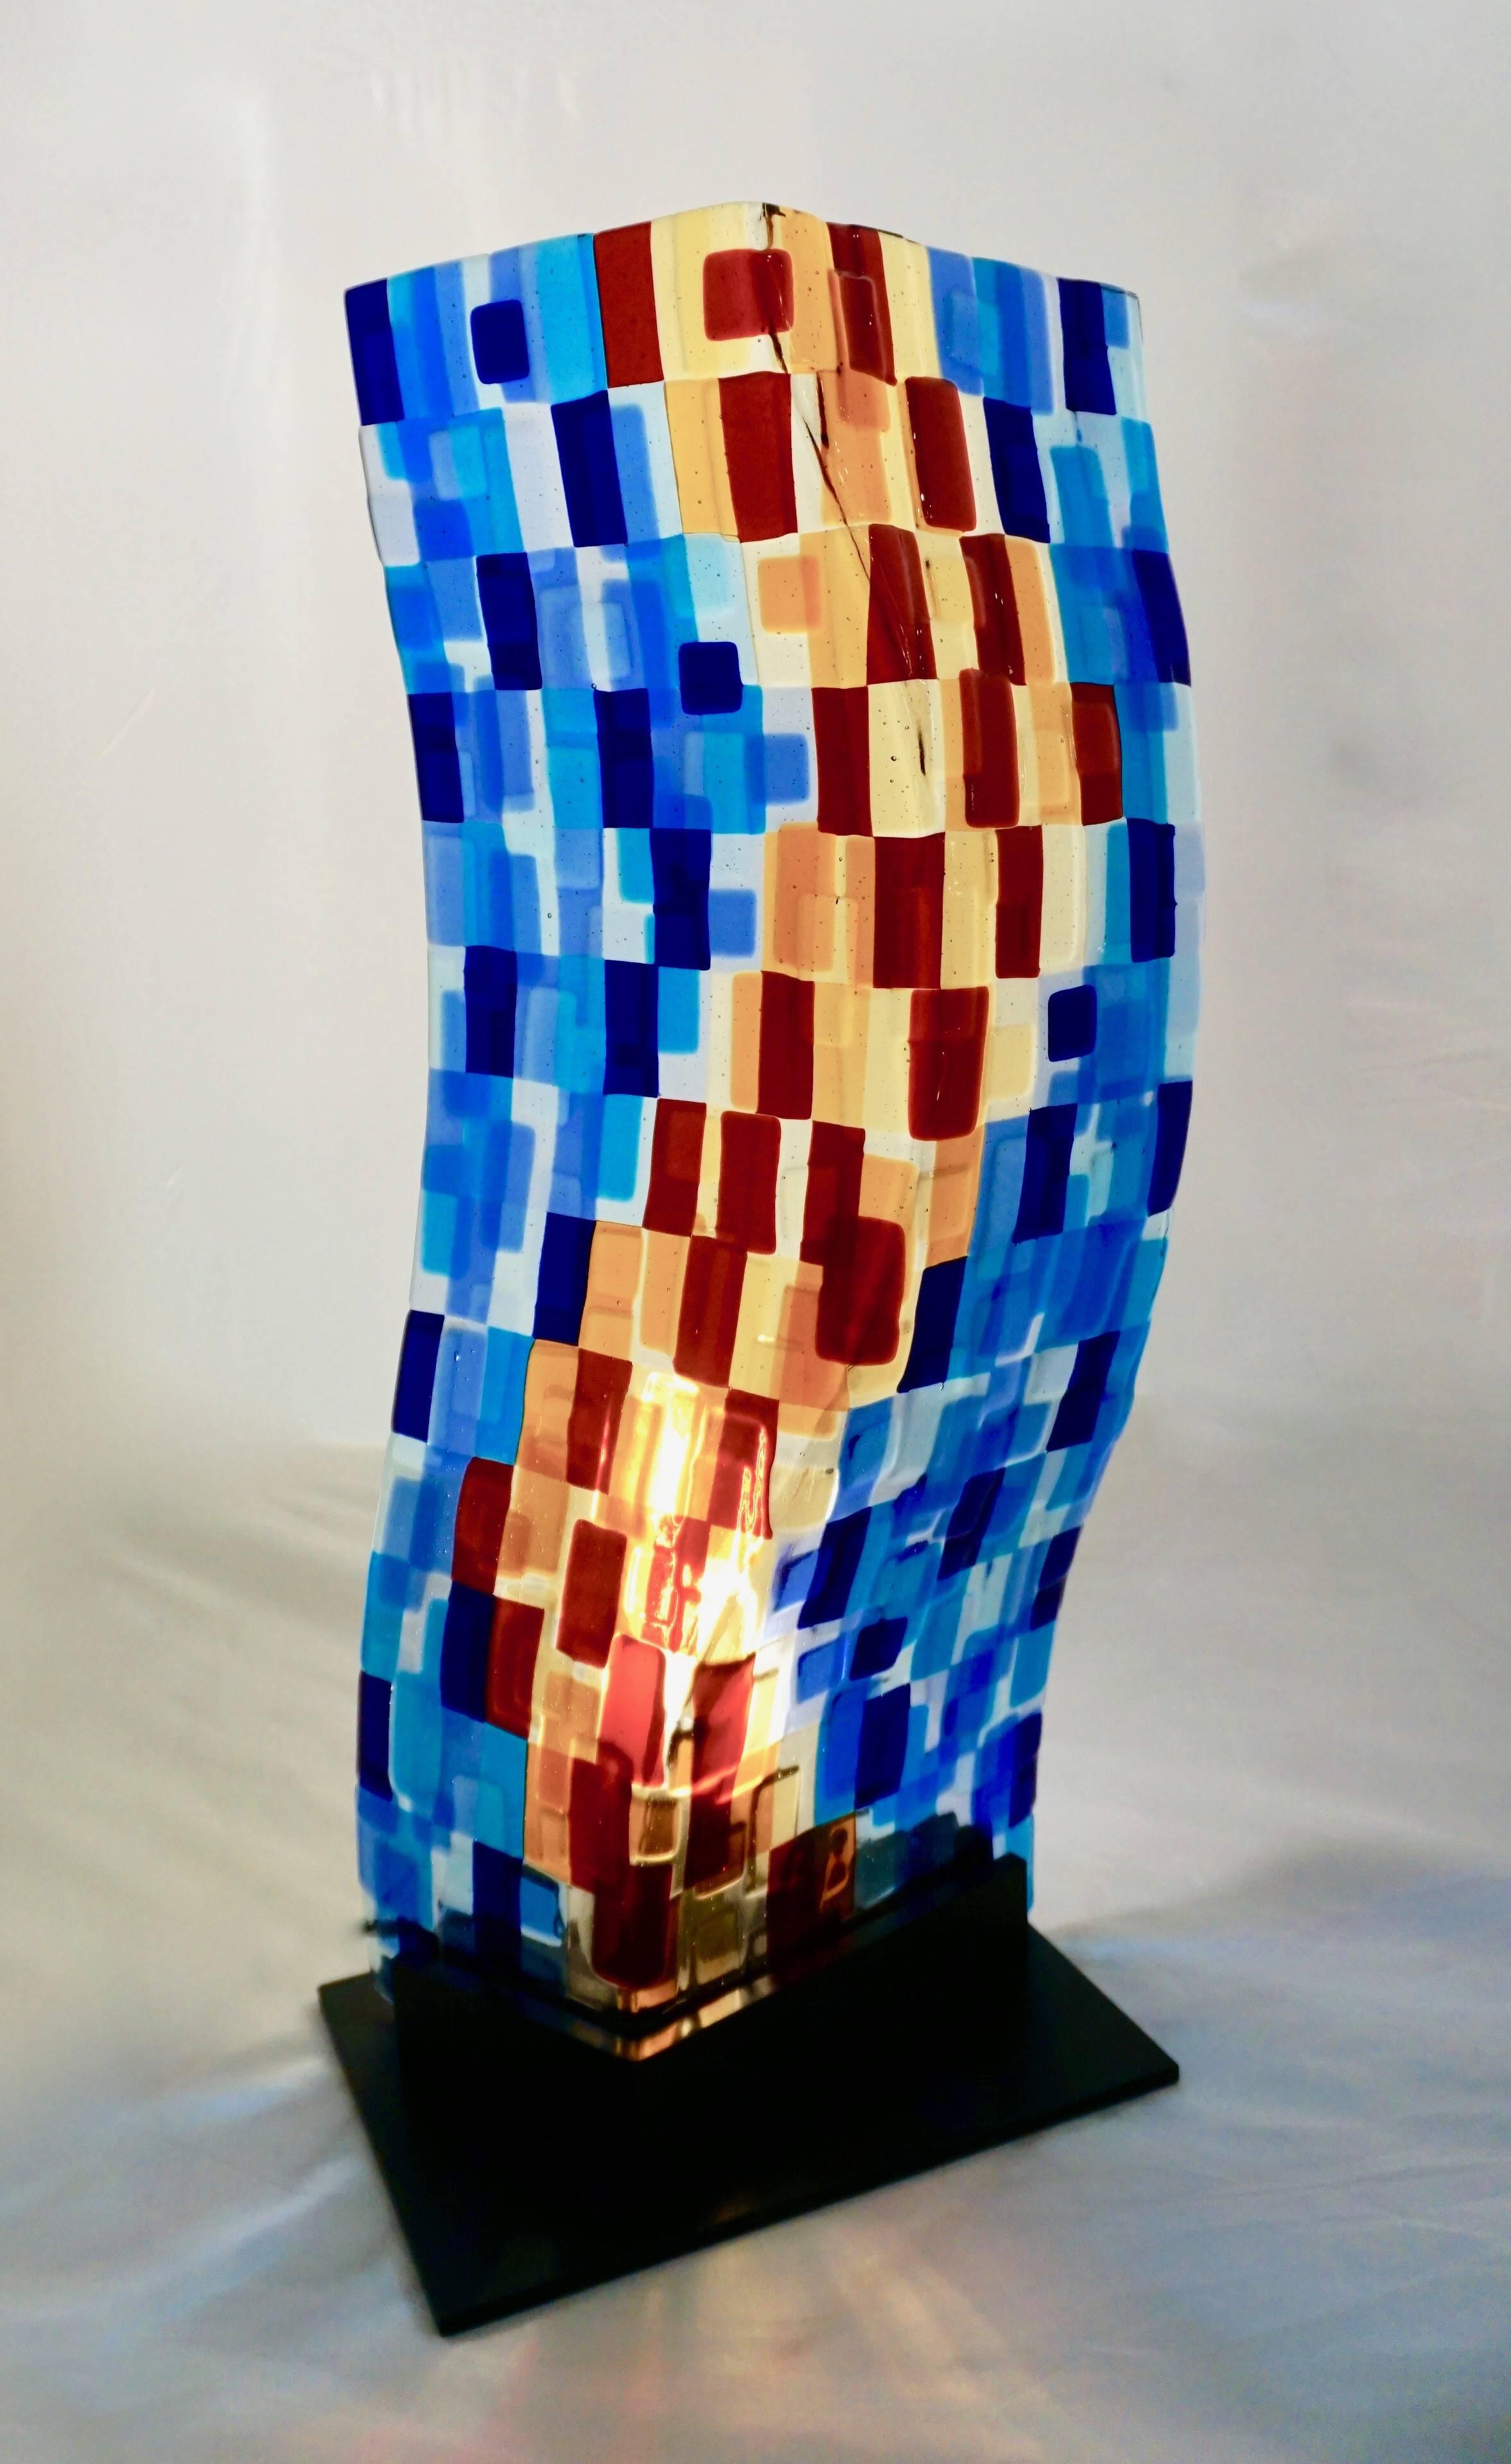 Zeitgenössische moderne abstrakte Muranoglas-Skulptur-Lampe, eine dekorative beleuchtete gebogene Glasplatte auf einem schwarz lackierten Metallsockel, realisiert als farbenfrohes Mosaik, Töne von Azur und Blau, Gelb, Rot und Burgunderpflaume: hohe